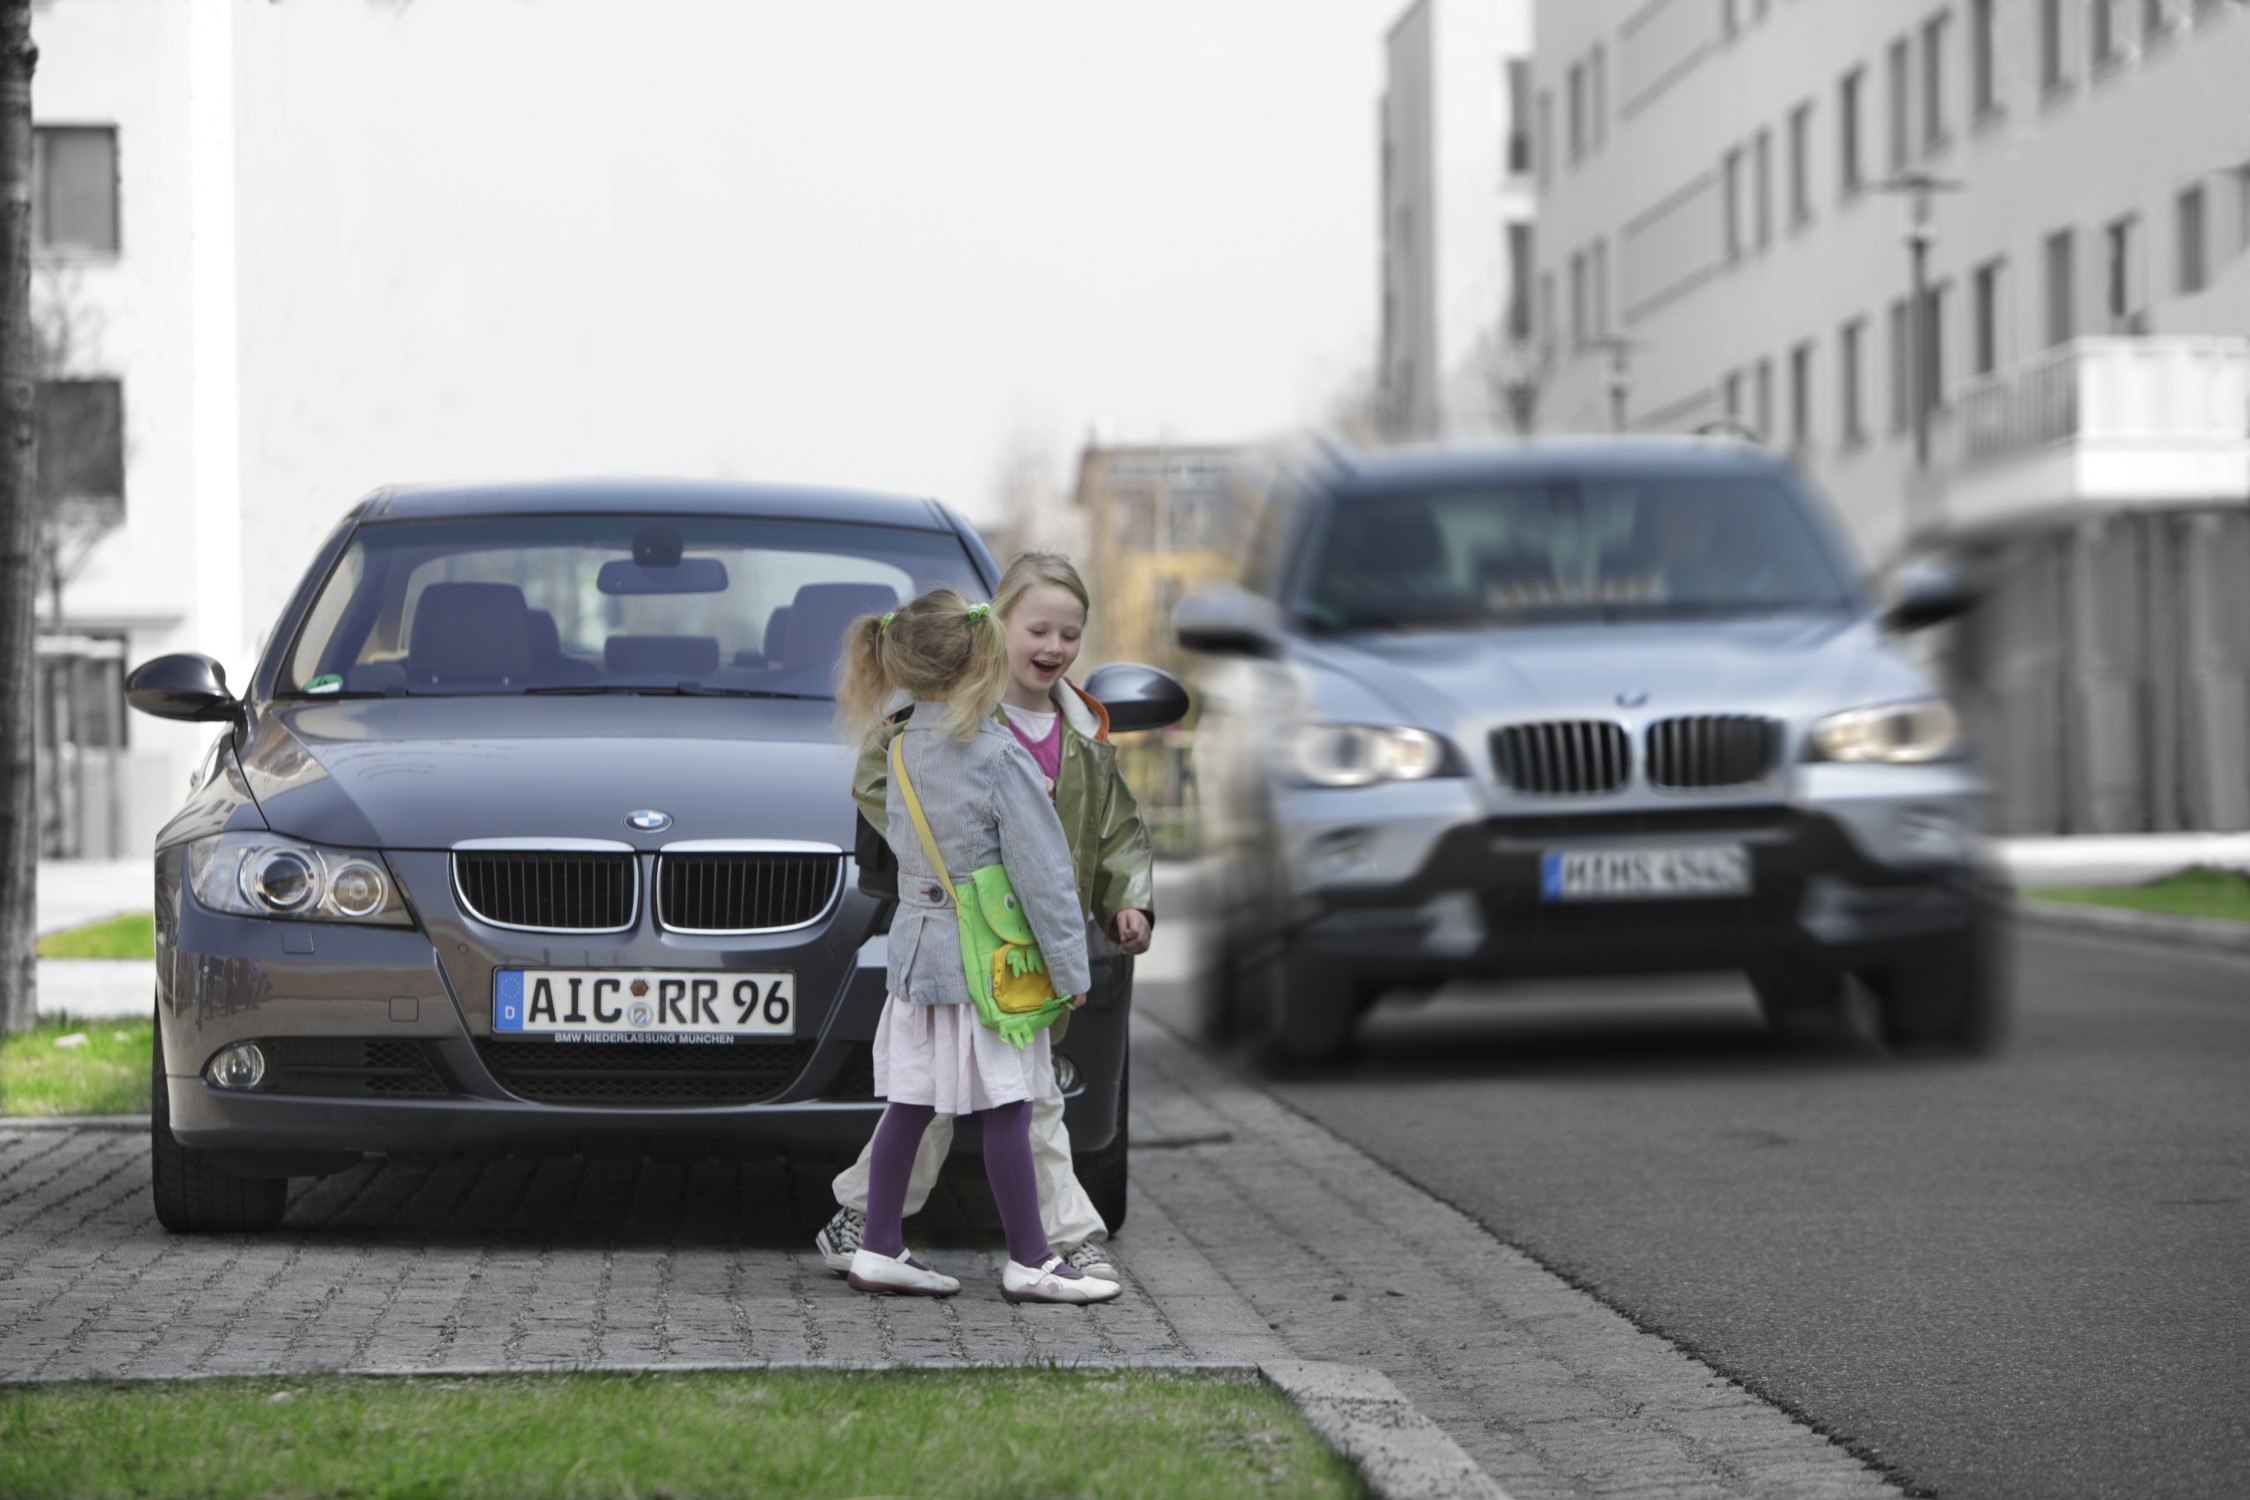 Ребенок выбежал на дорогу. Дети возле автомобиля. Пешеход и автомобиль. Машина едет на пешехода.